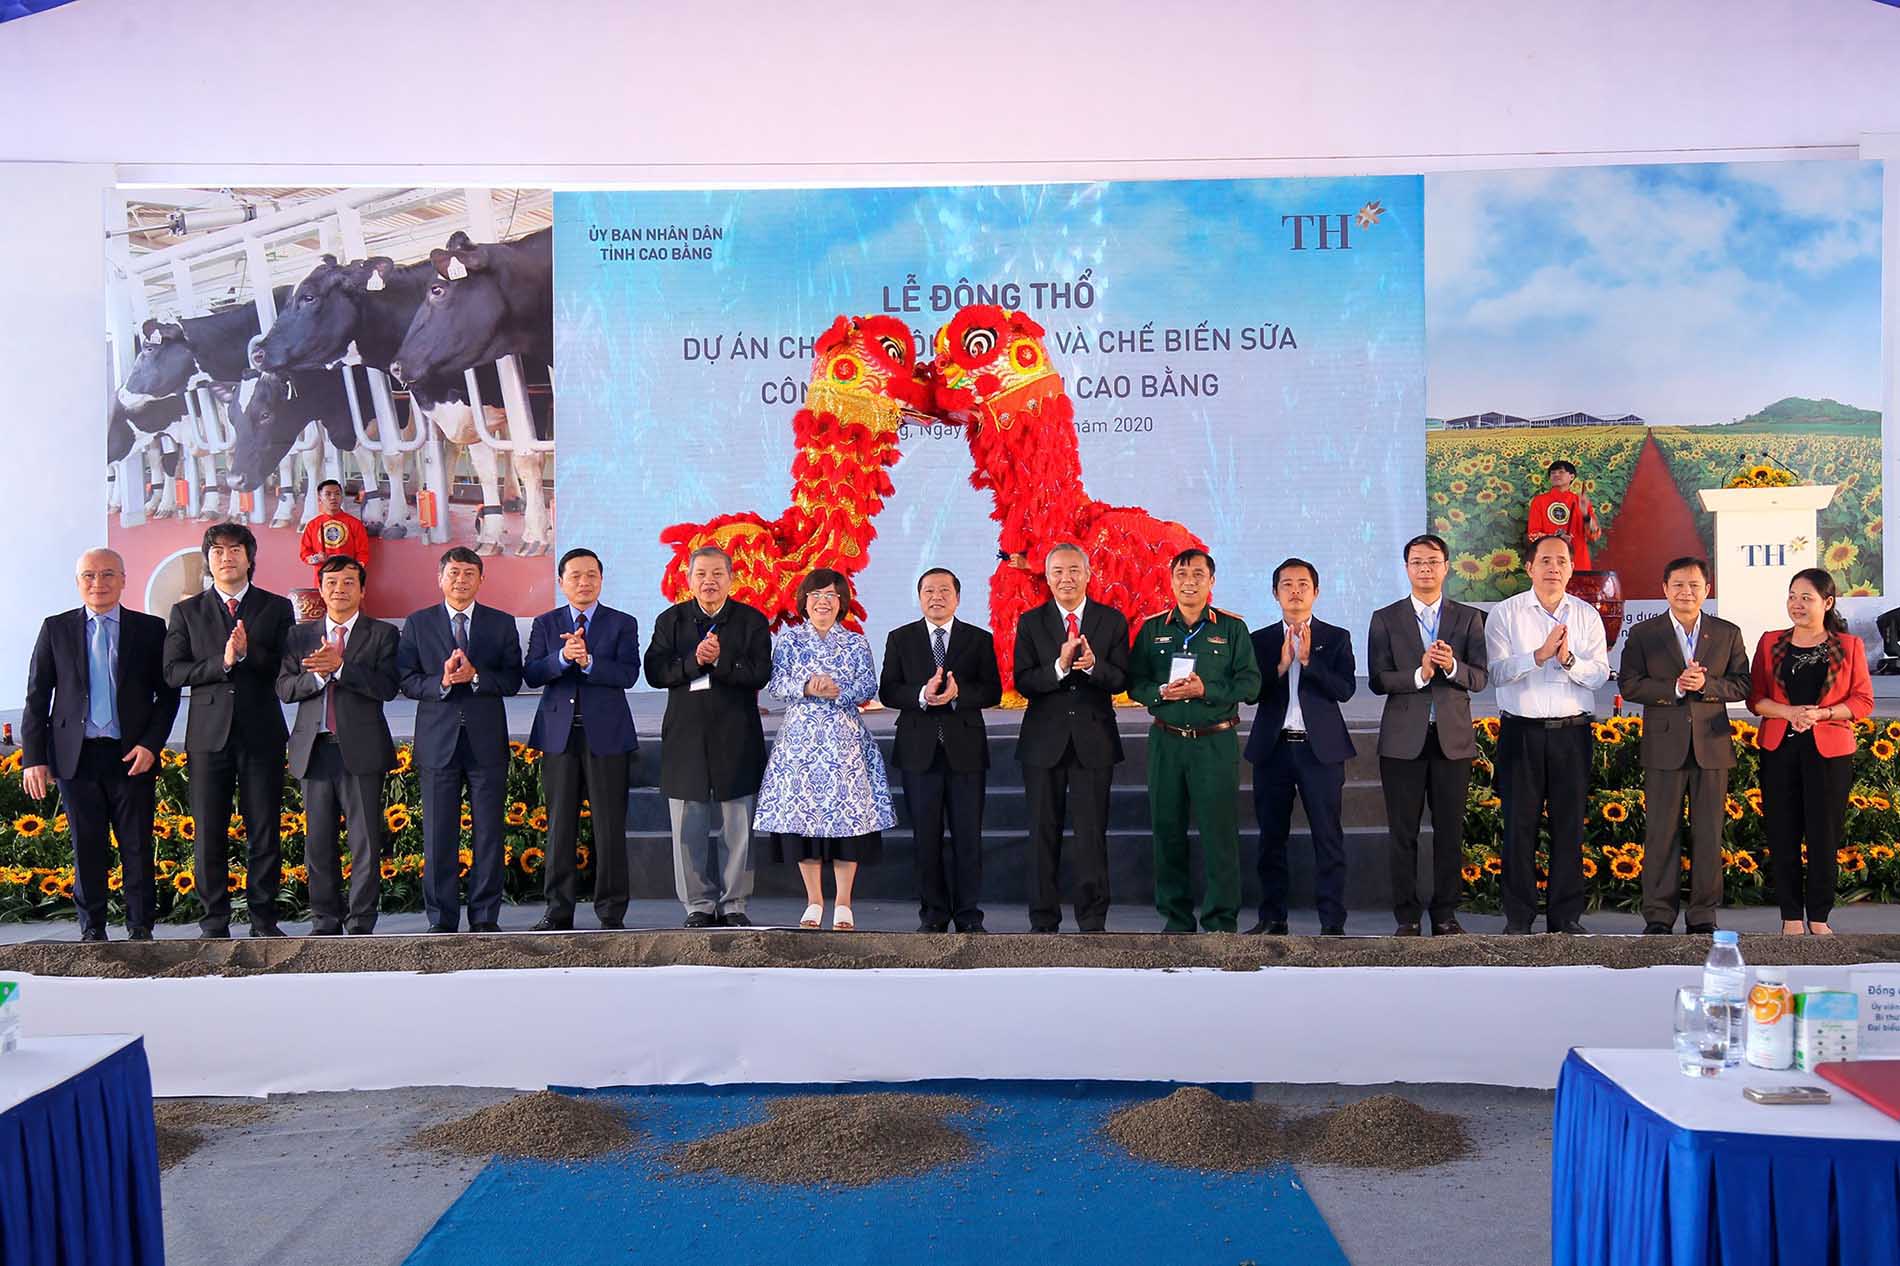 Nghi lễ động thổ Dự án chăn nuôi bò sữa và chế biến sữa công nghệ cao tại Cao Bằng